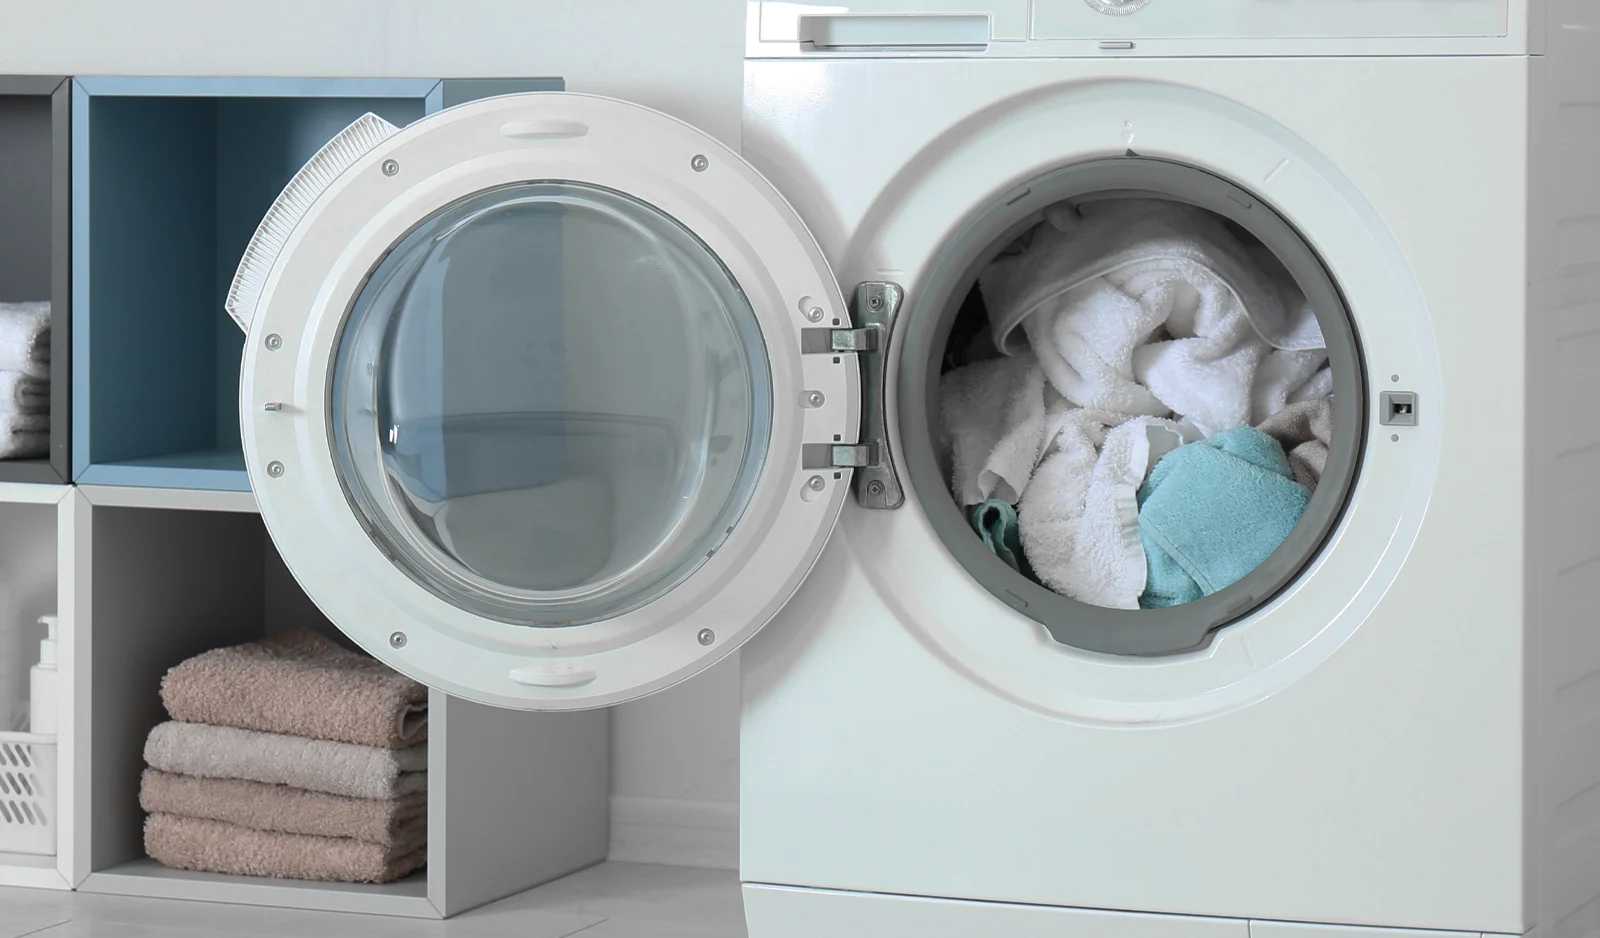 Vêtements dans une machine à laver
